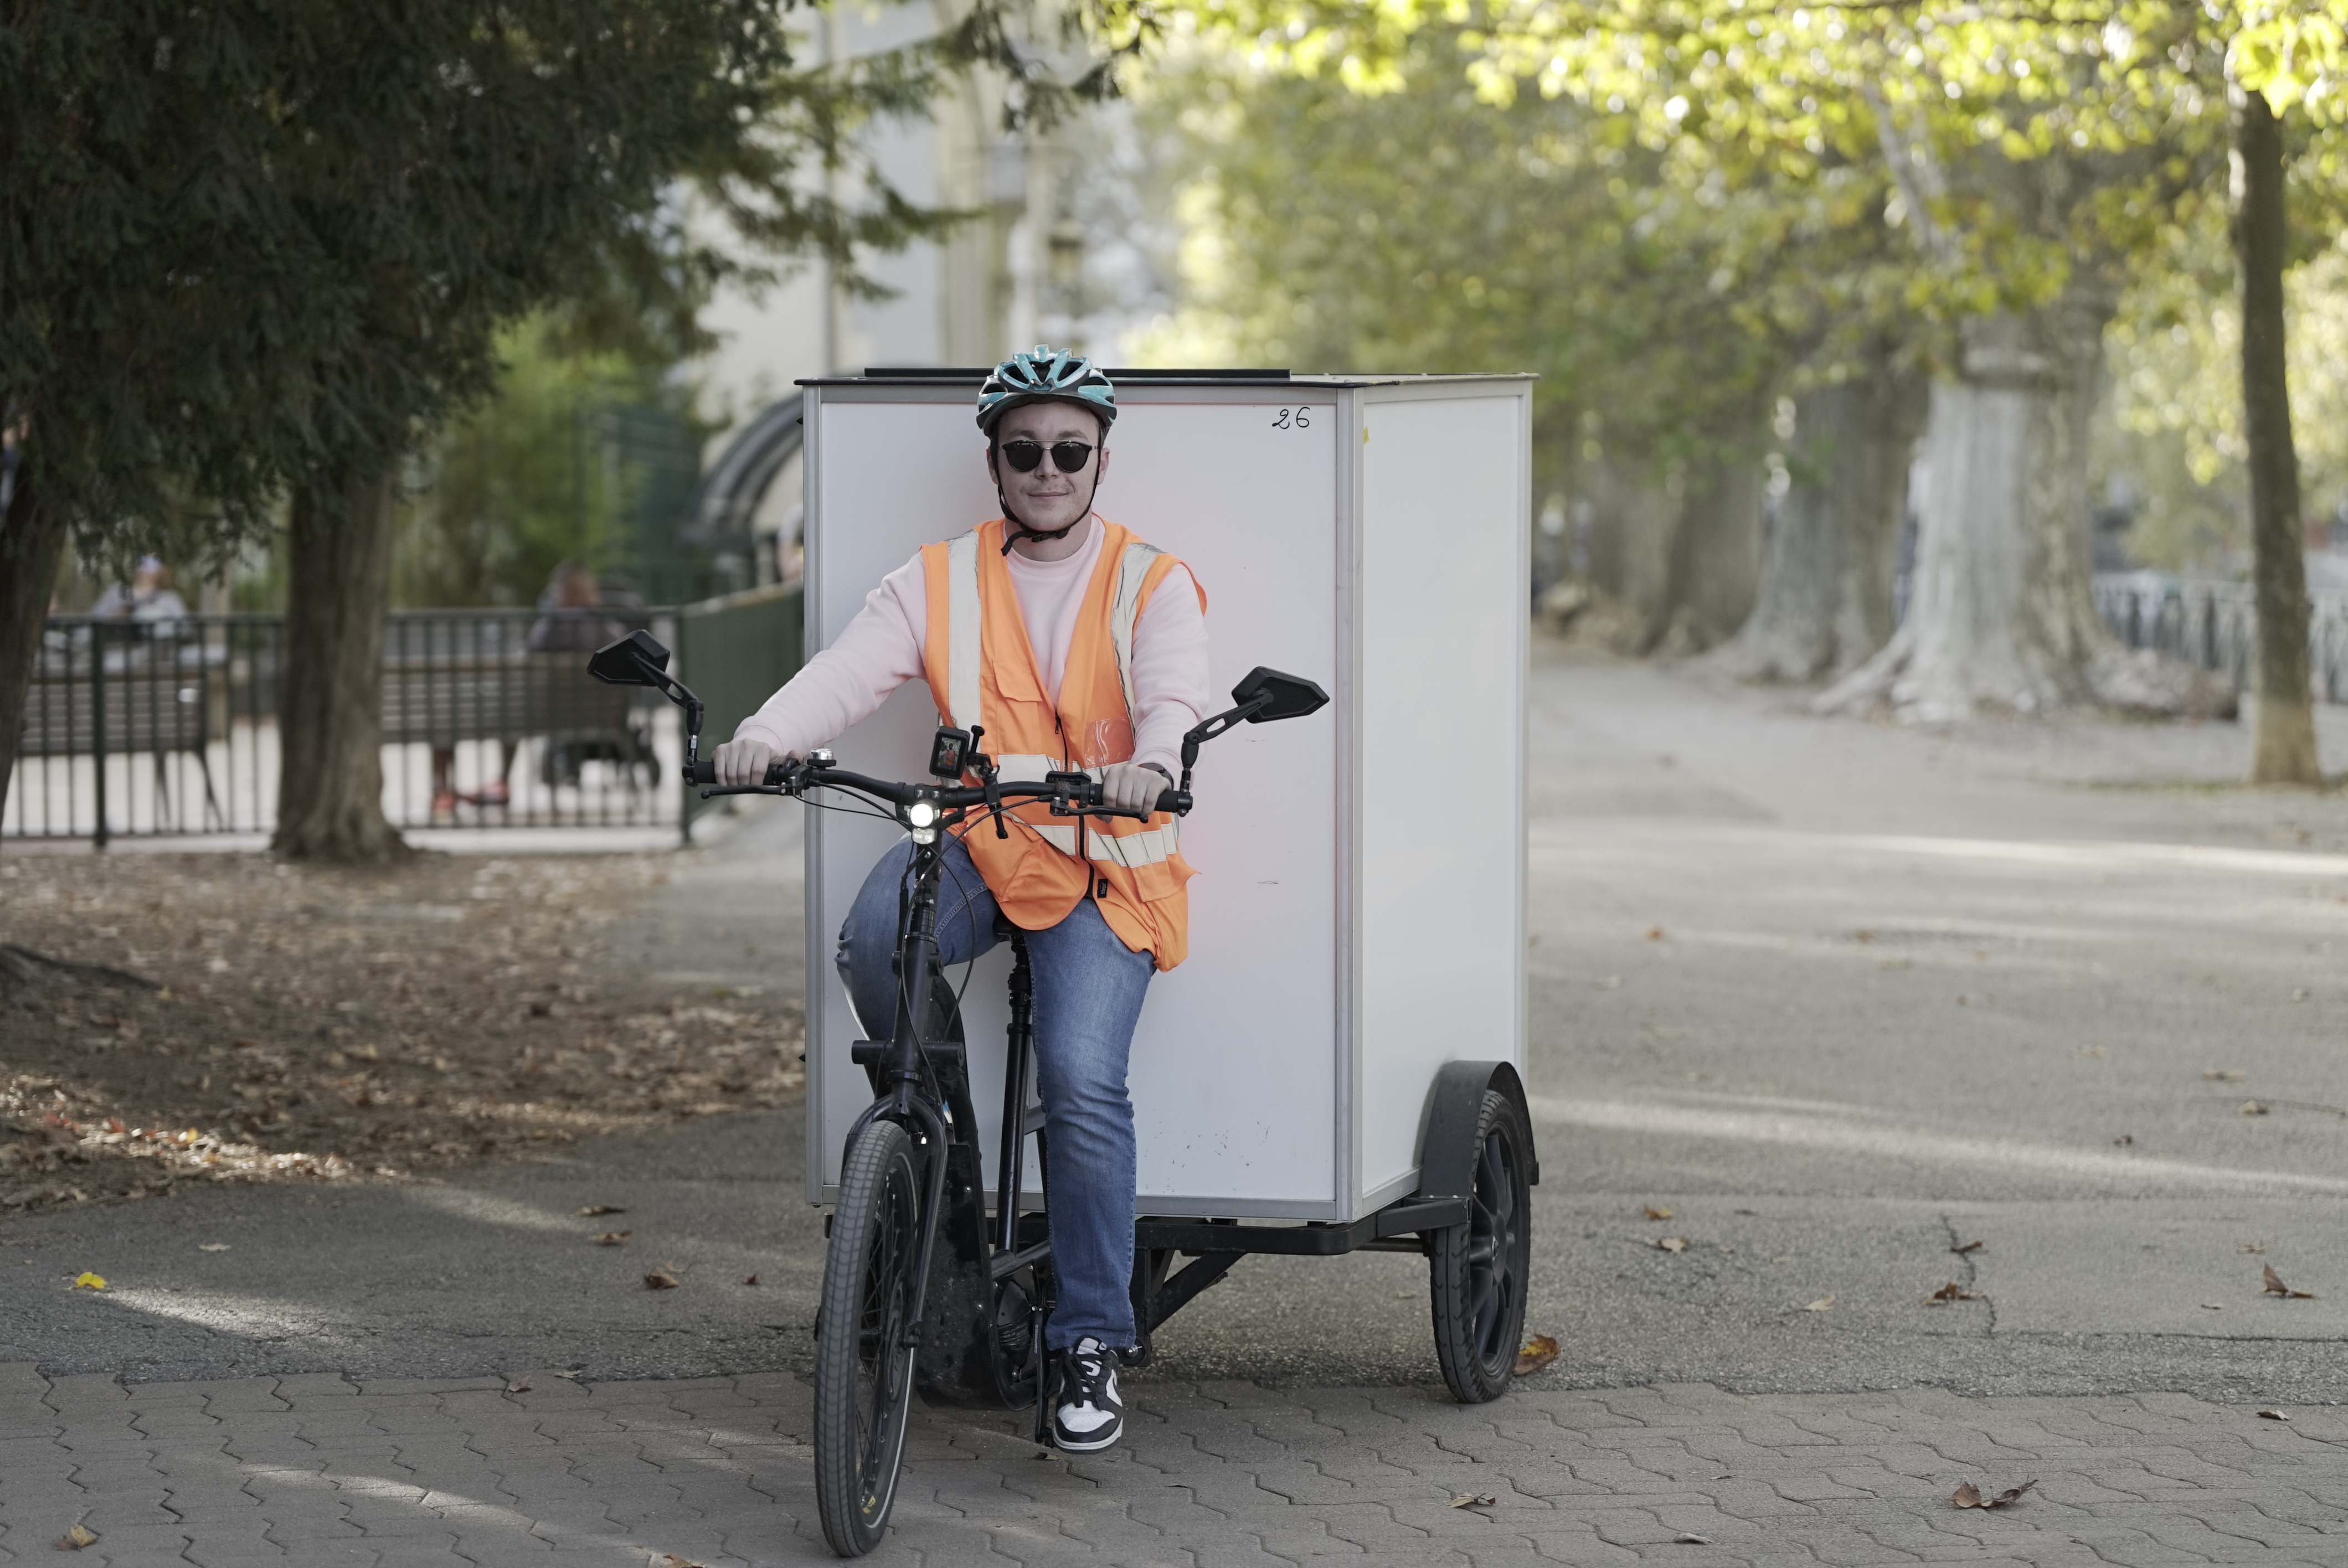 Les livraisons à vélo font partie de la panoplie déployée par Amazon à Toulouse. (Photo : Amazon)